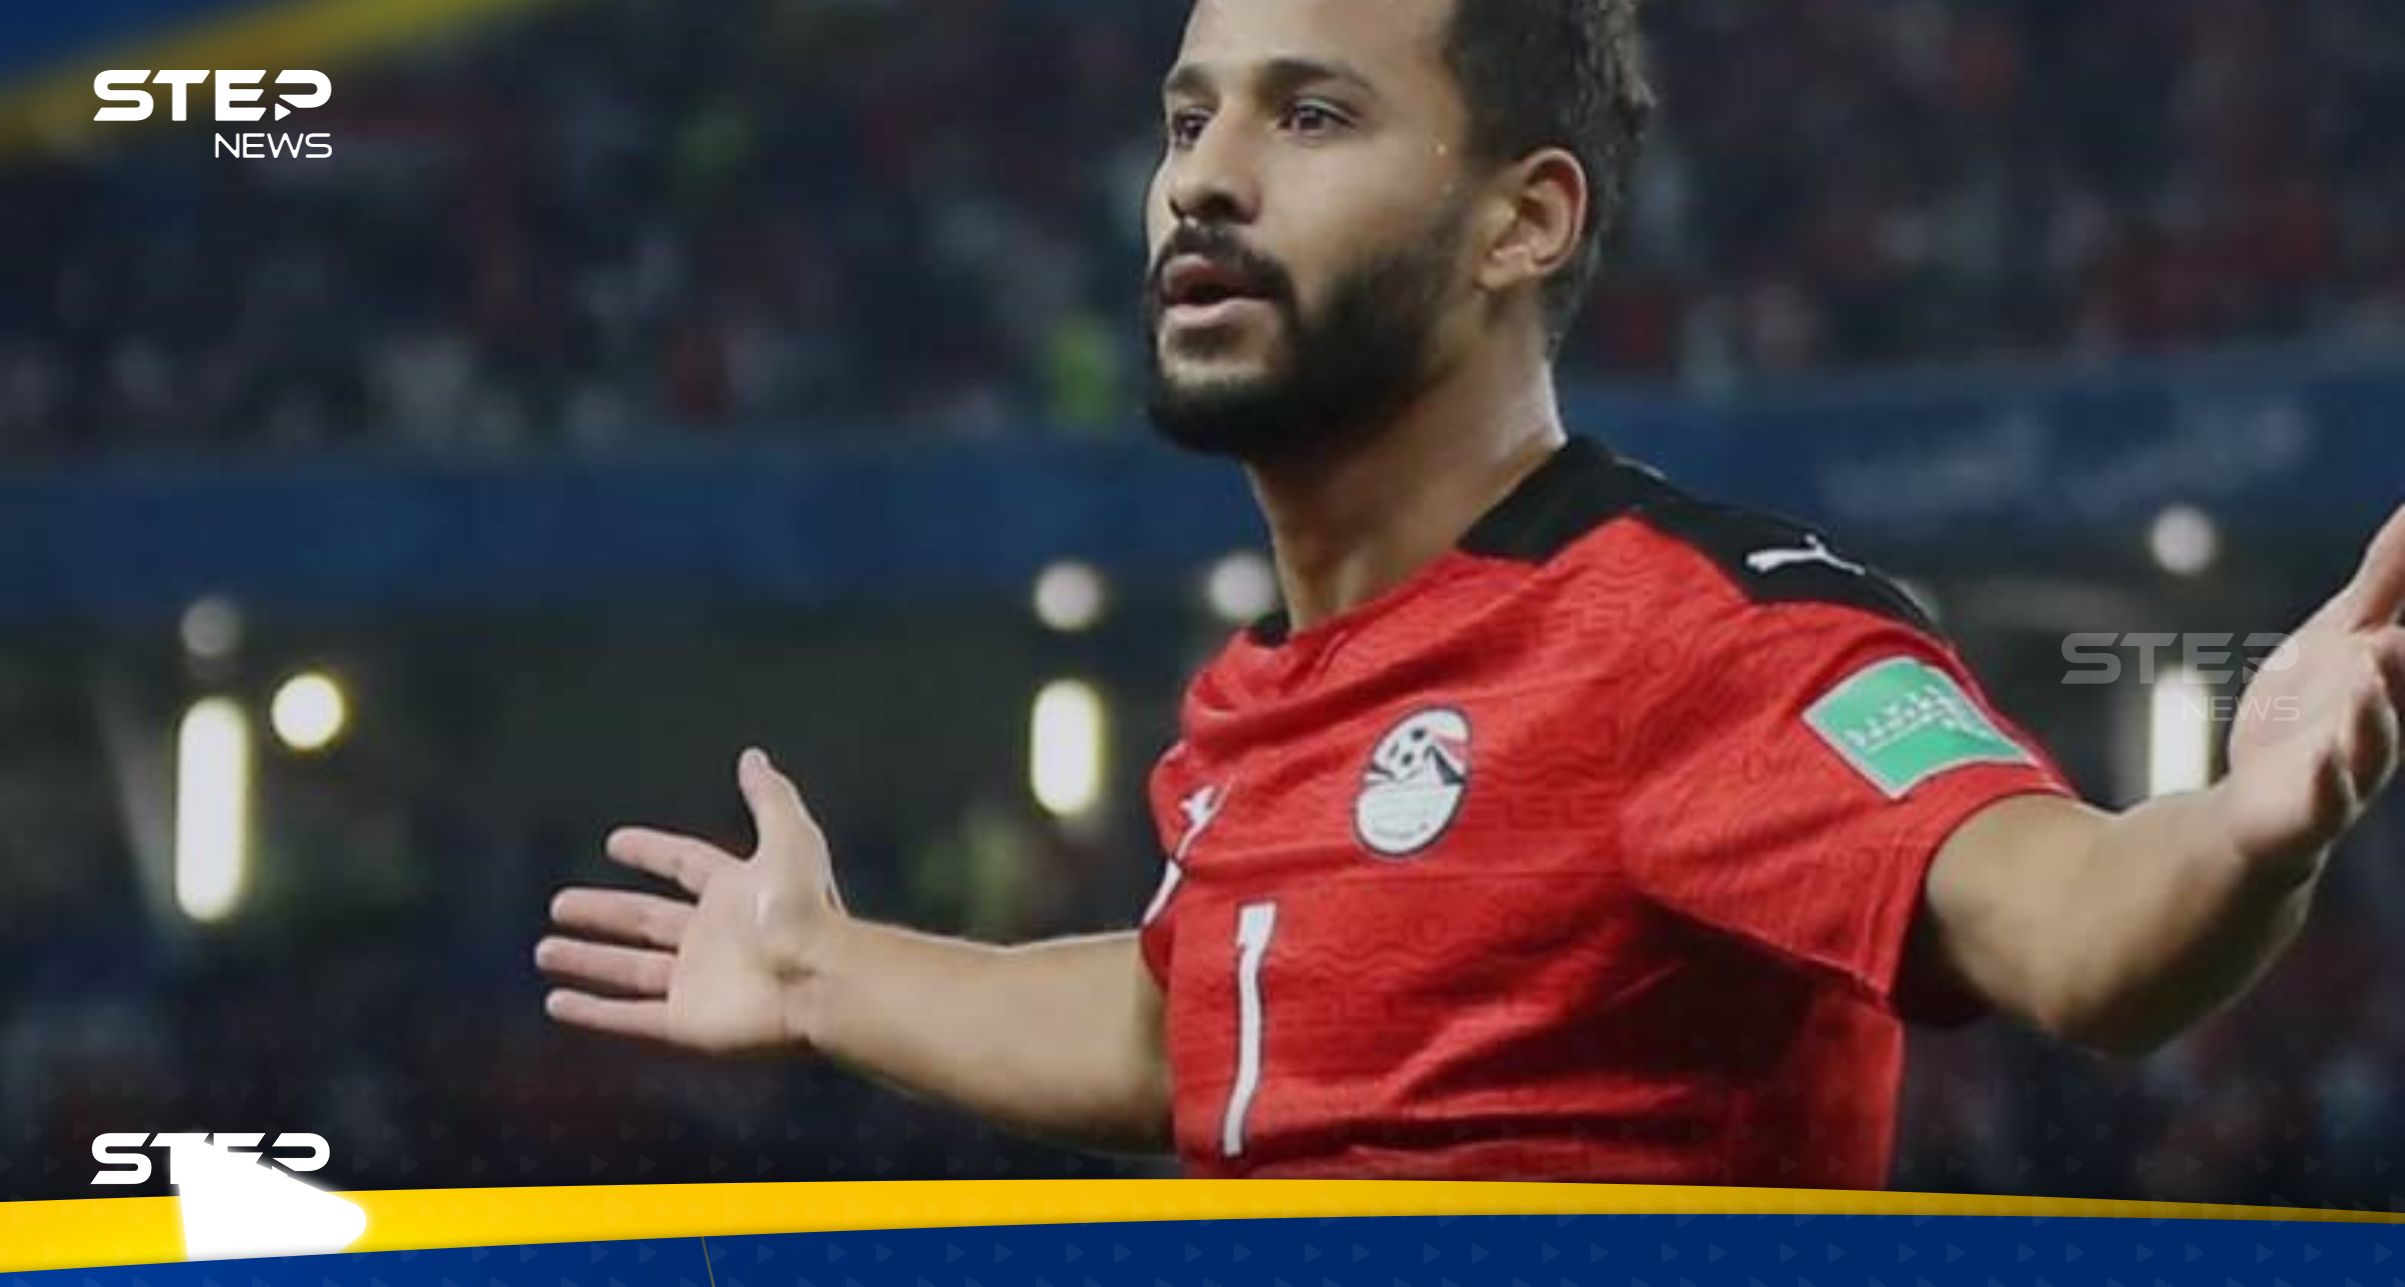 ما علاقة القهوة بسقوط اللاعب المصري أحمد رفعت وتوقف عضلة قلبه؟